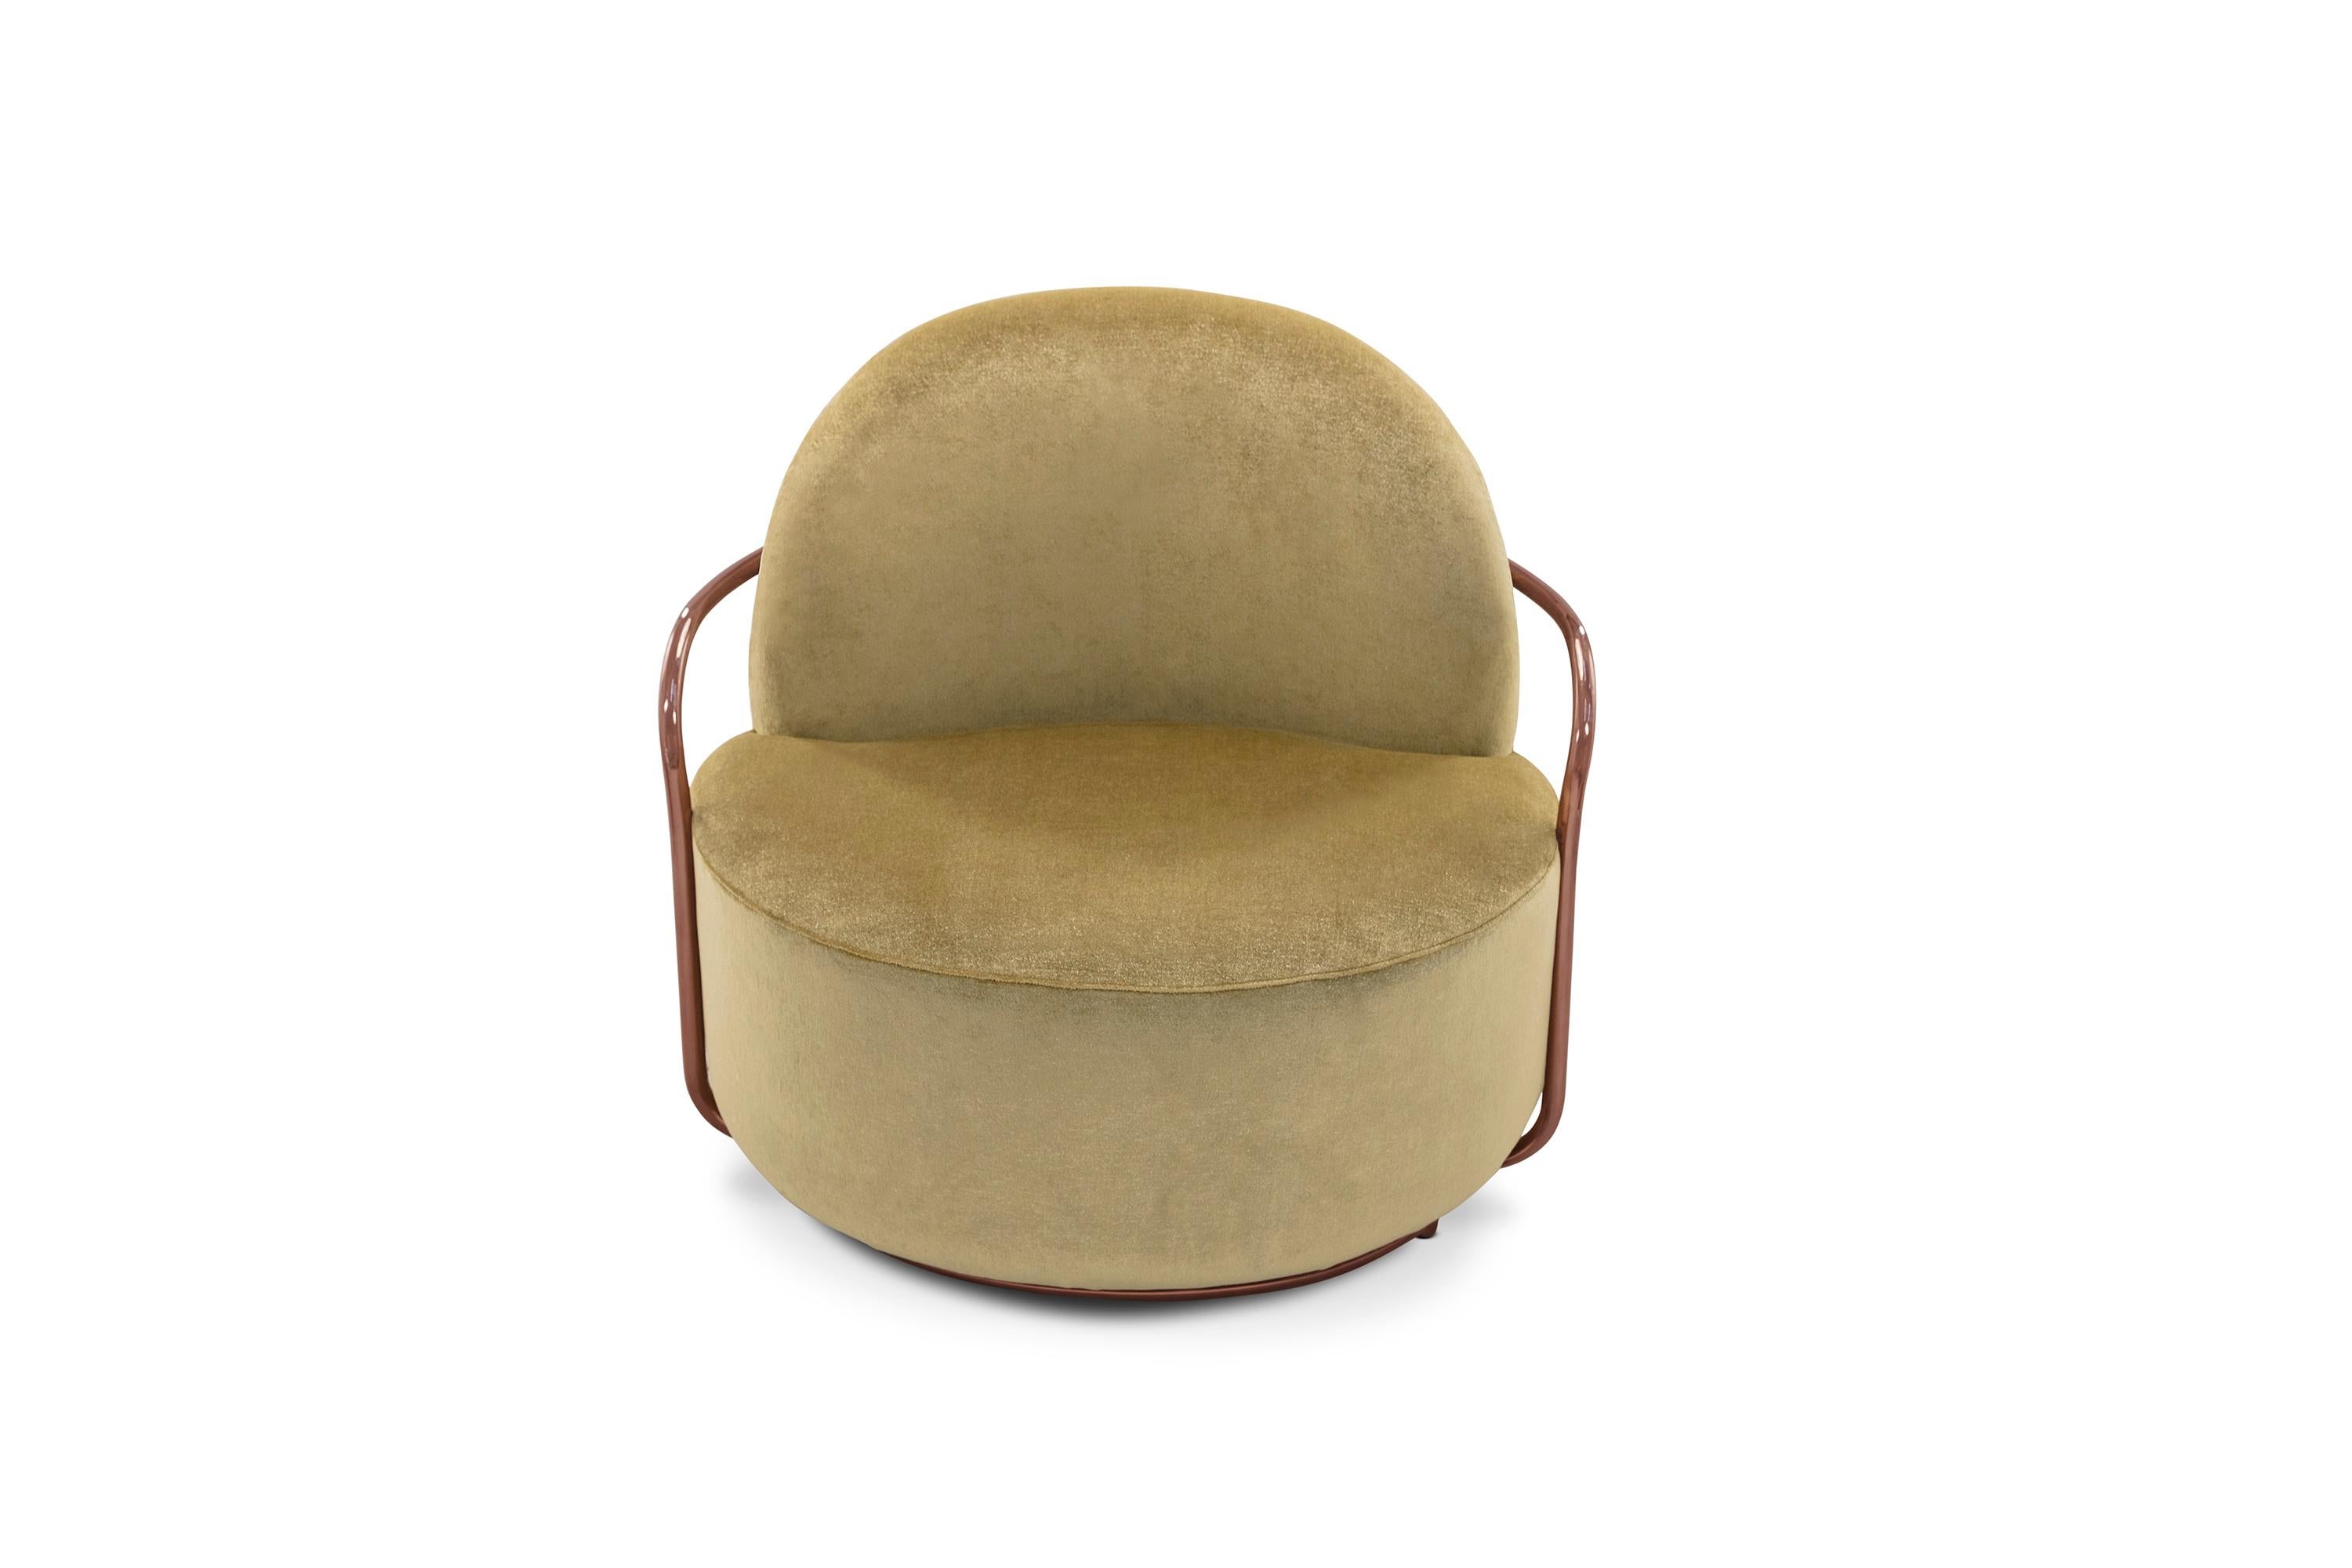 Orion Lounge Chair with Gold Dedar Velvet and Rose Gold Arms von Nika Zupanc ist ein einsitziges Sofa mit opulentem goldenem Stoff von Dedar Milano und roségoldenen Metallarmen. Ein besonderes Stück!

Nika Zupanc, eine auffallend renommierte